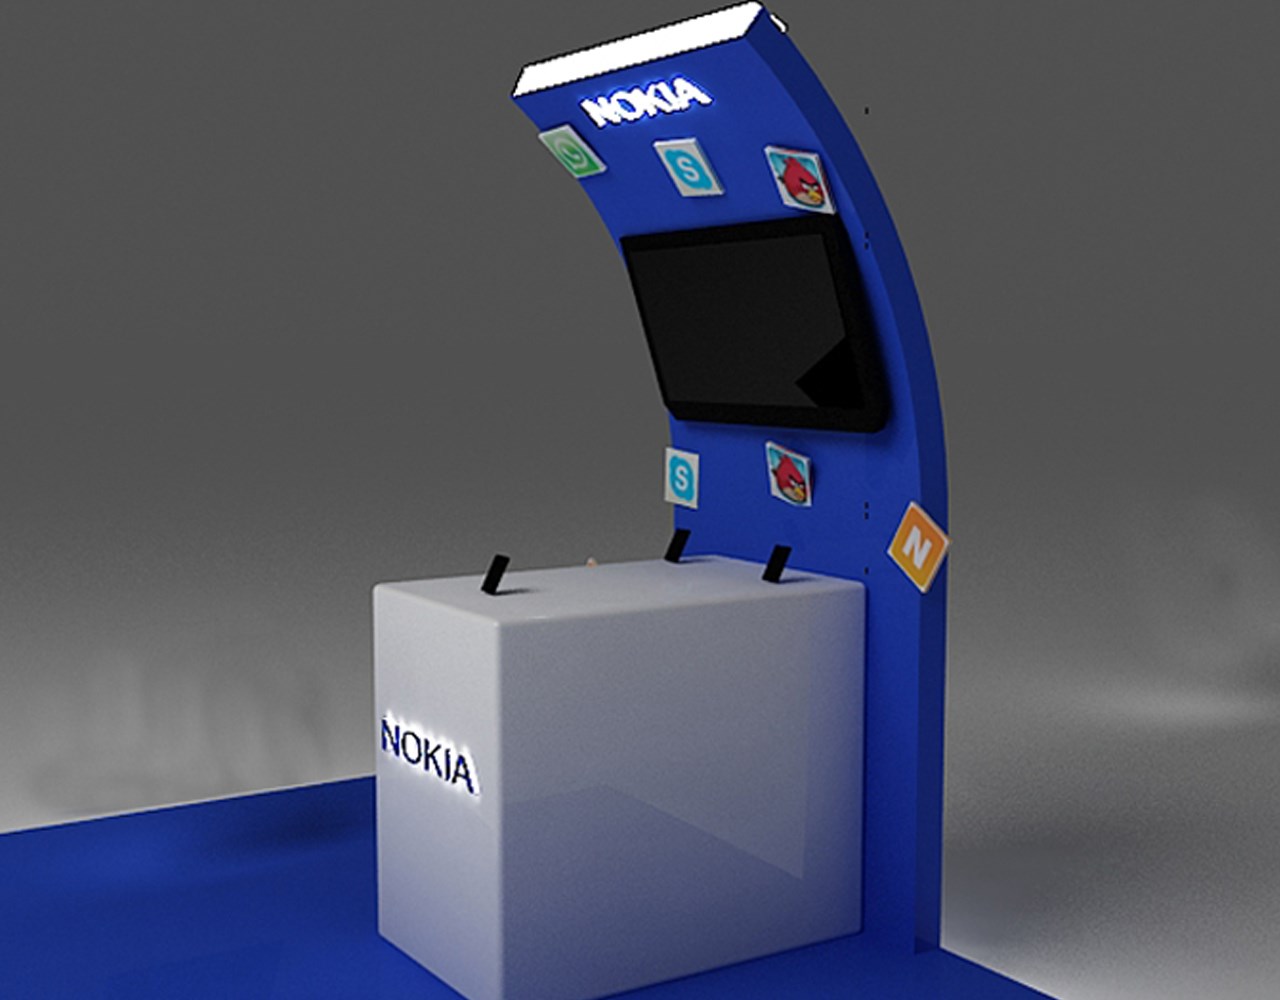 Nokia Kiosk